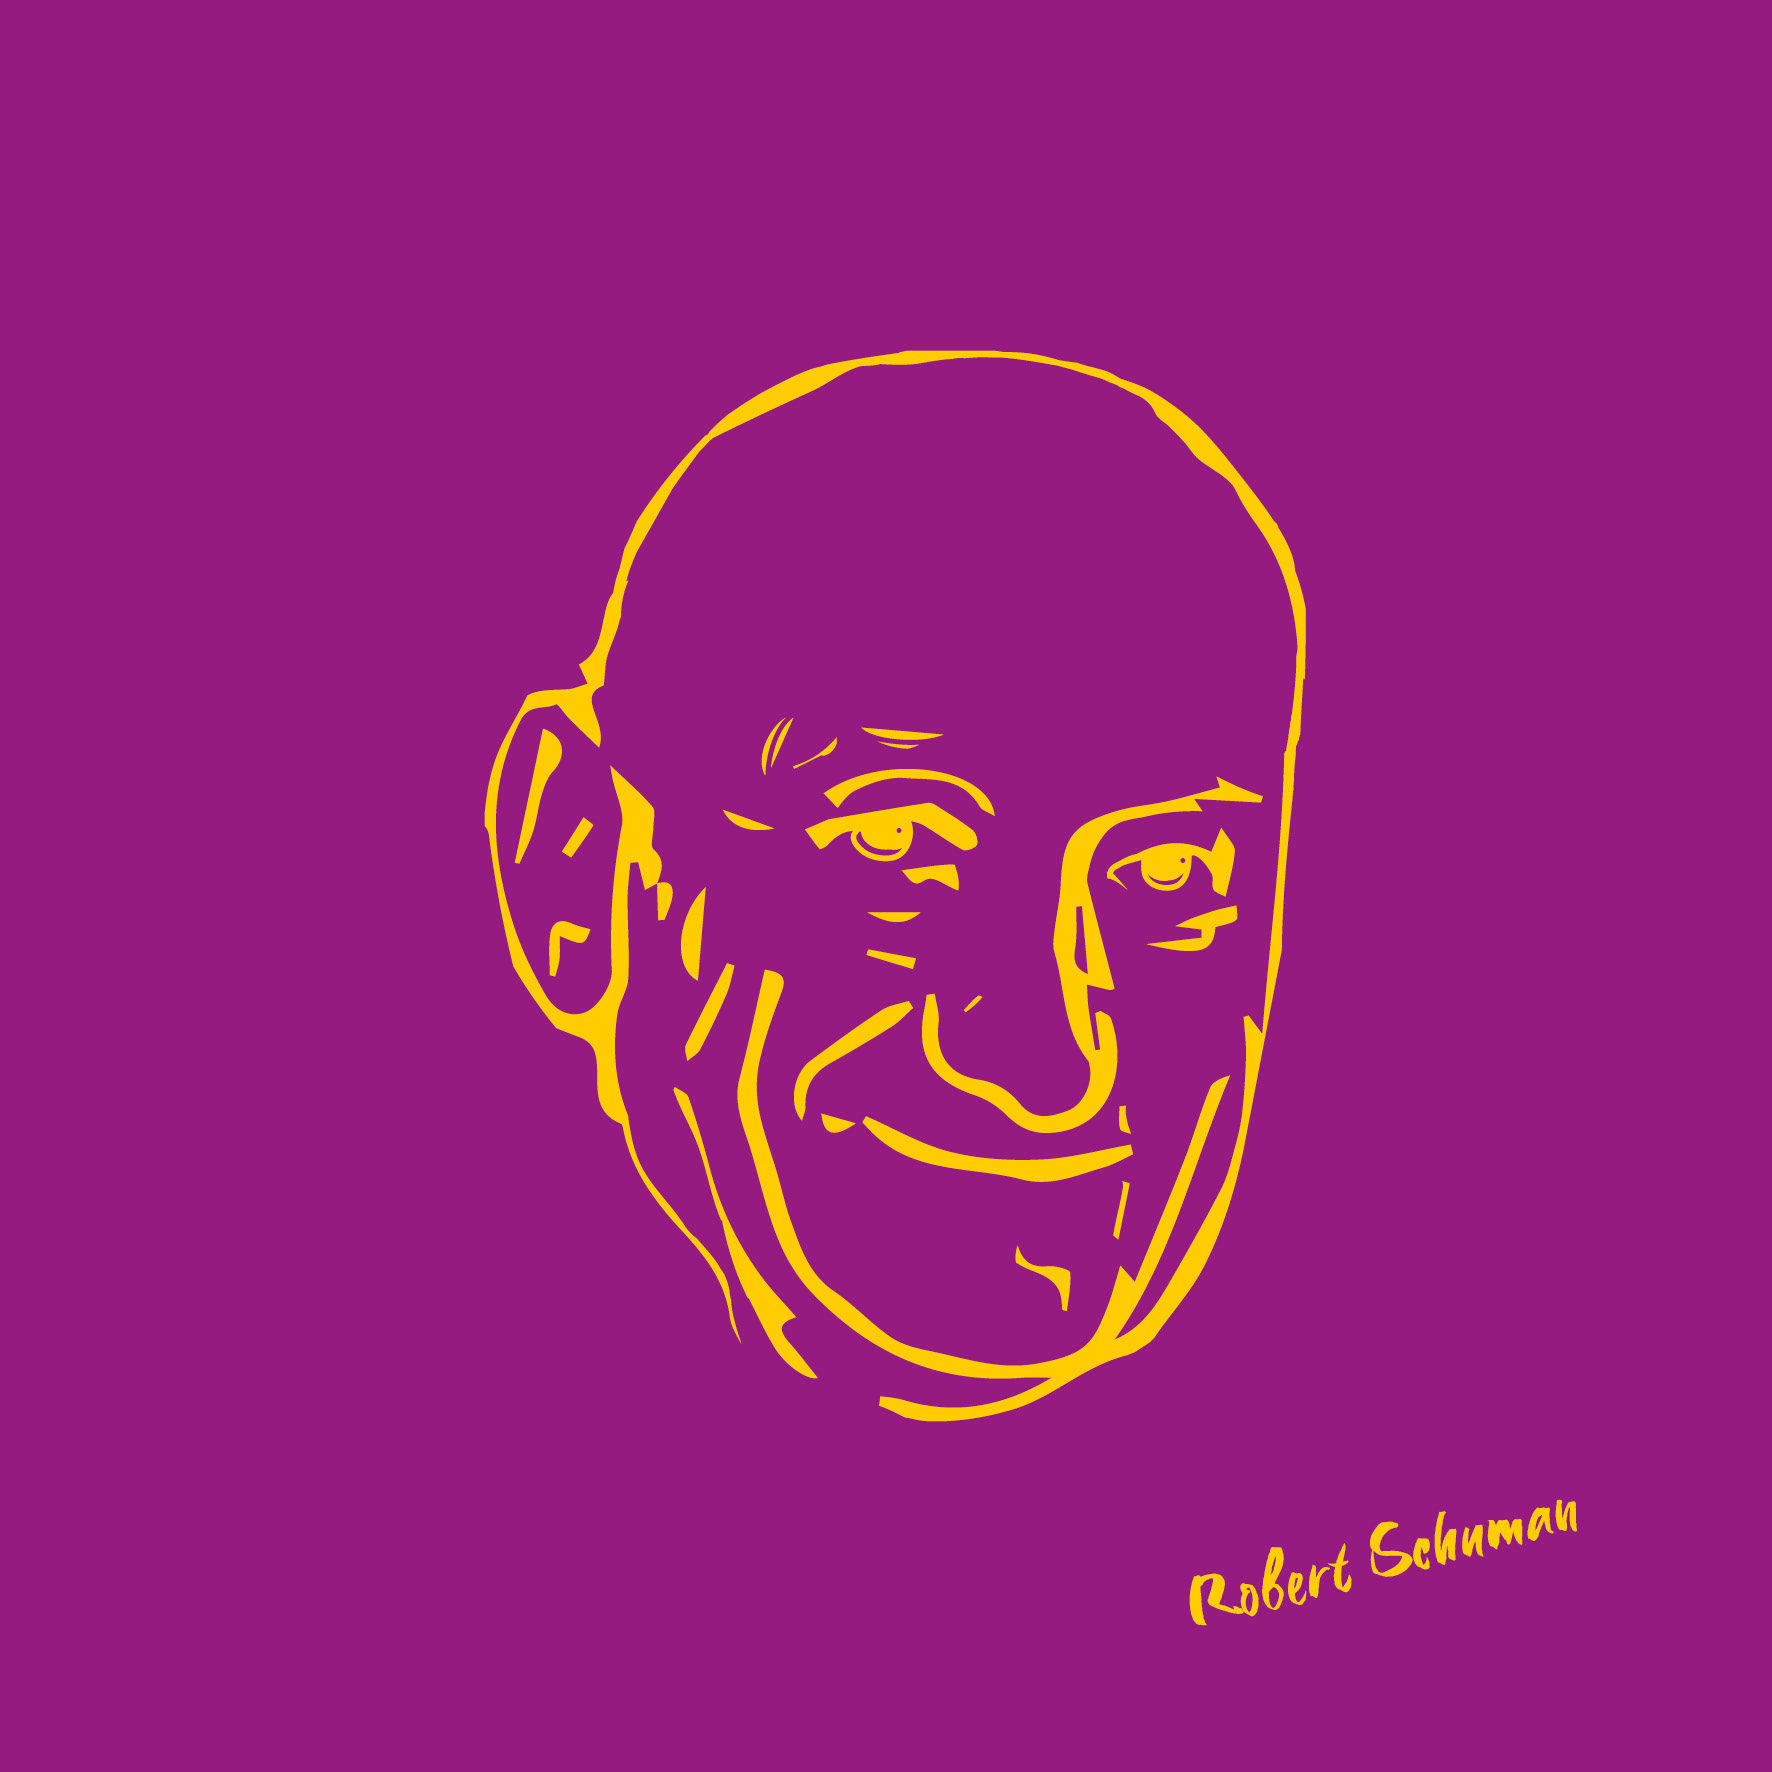 Robert Schuman auf Leinwand, Popart-Stil